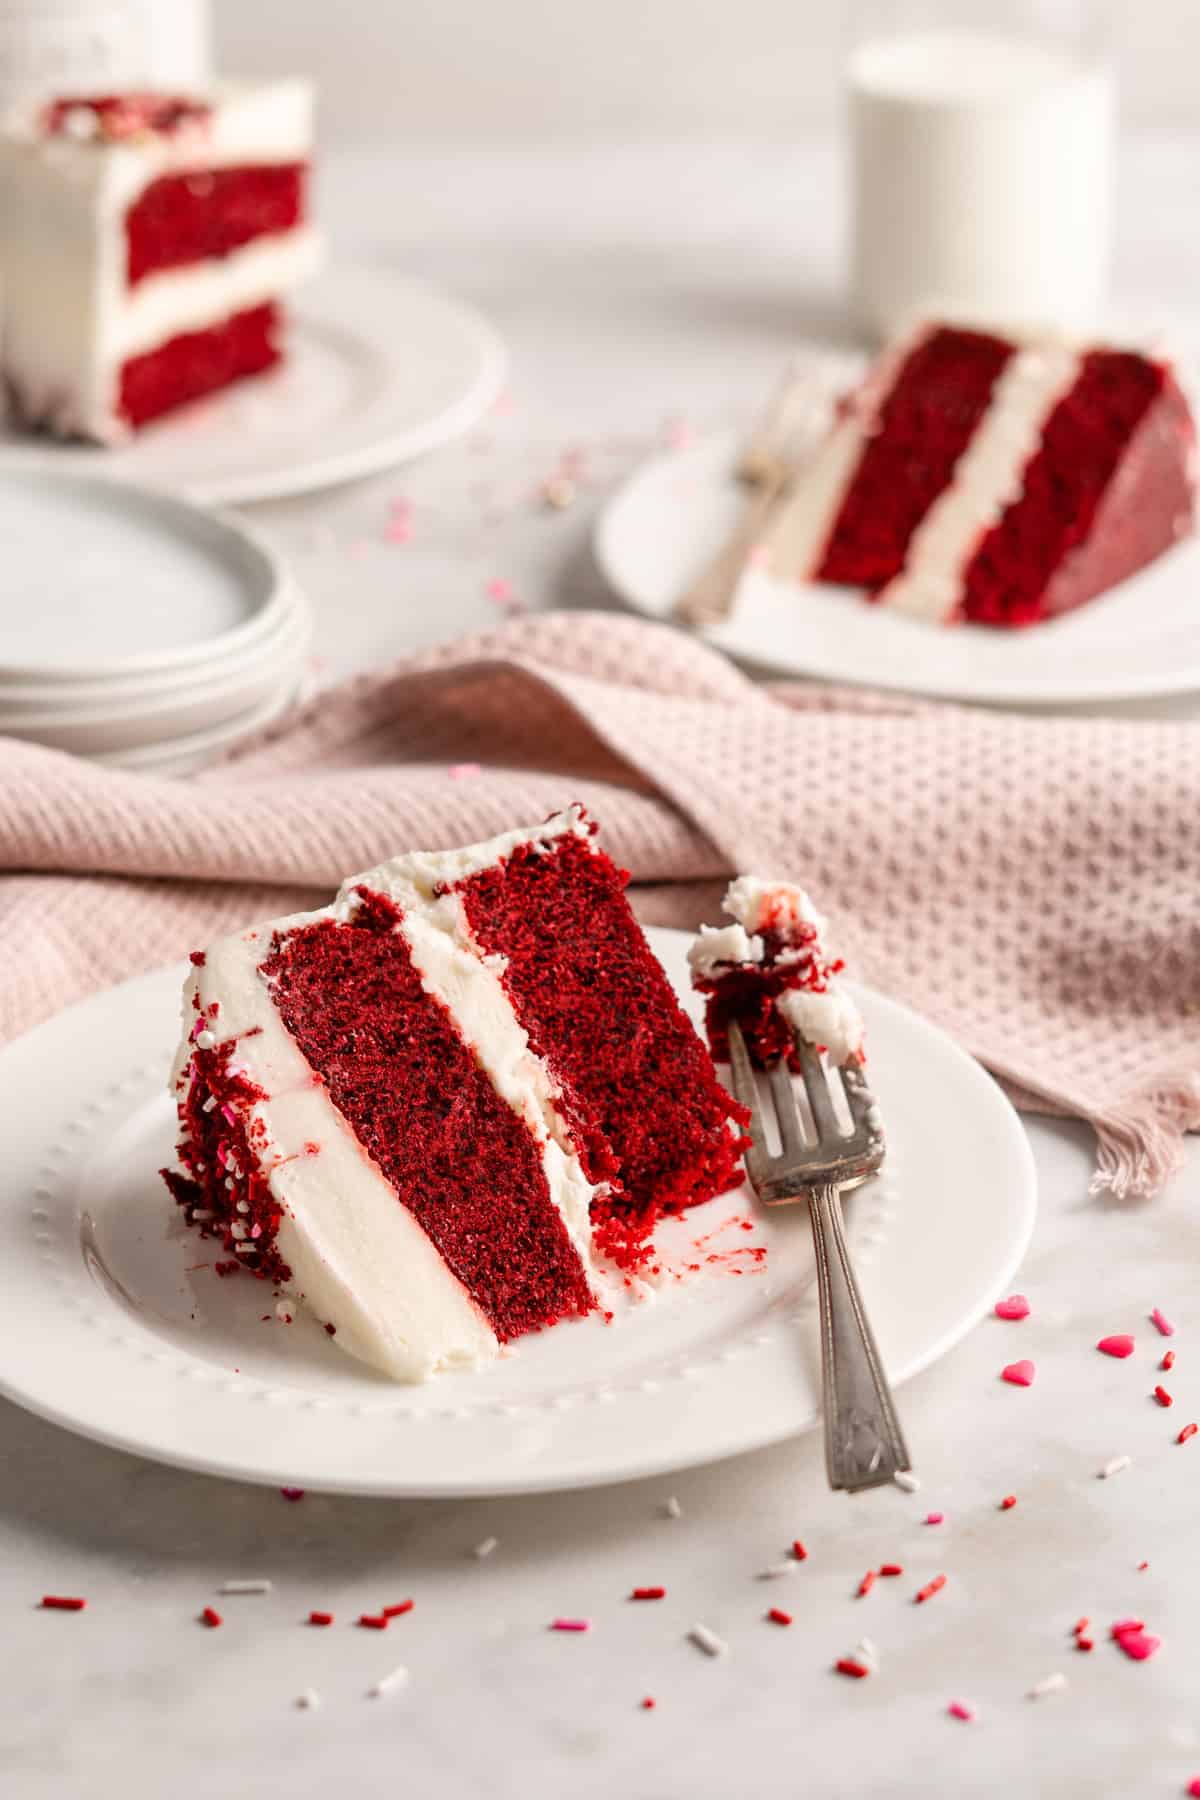 Slices of vegan red velvet cake on dessert plates